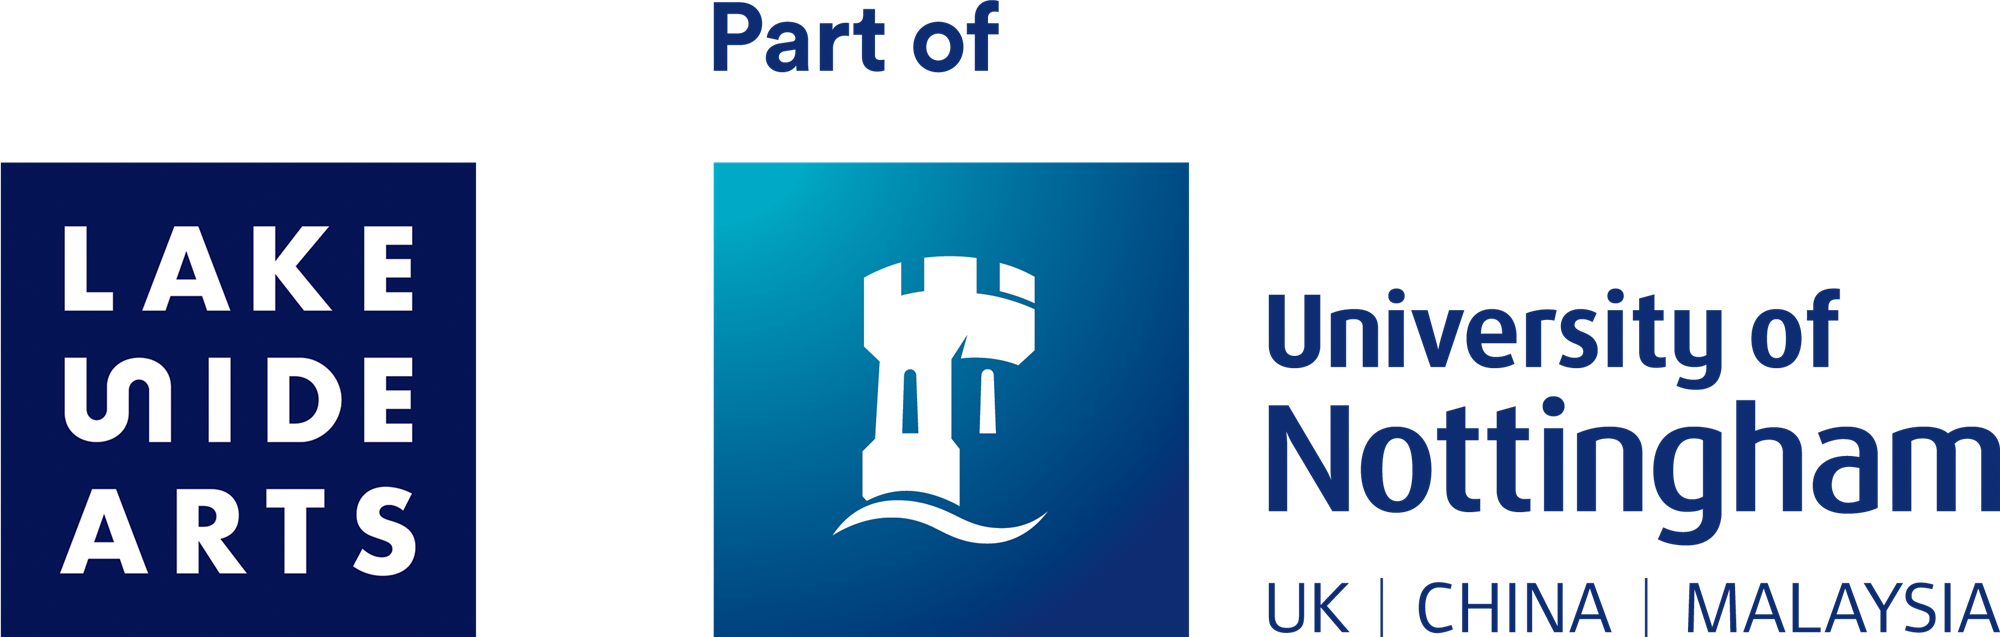 The Lakeside Arts logo, besides the University of Nottingham logo